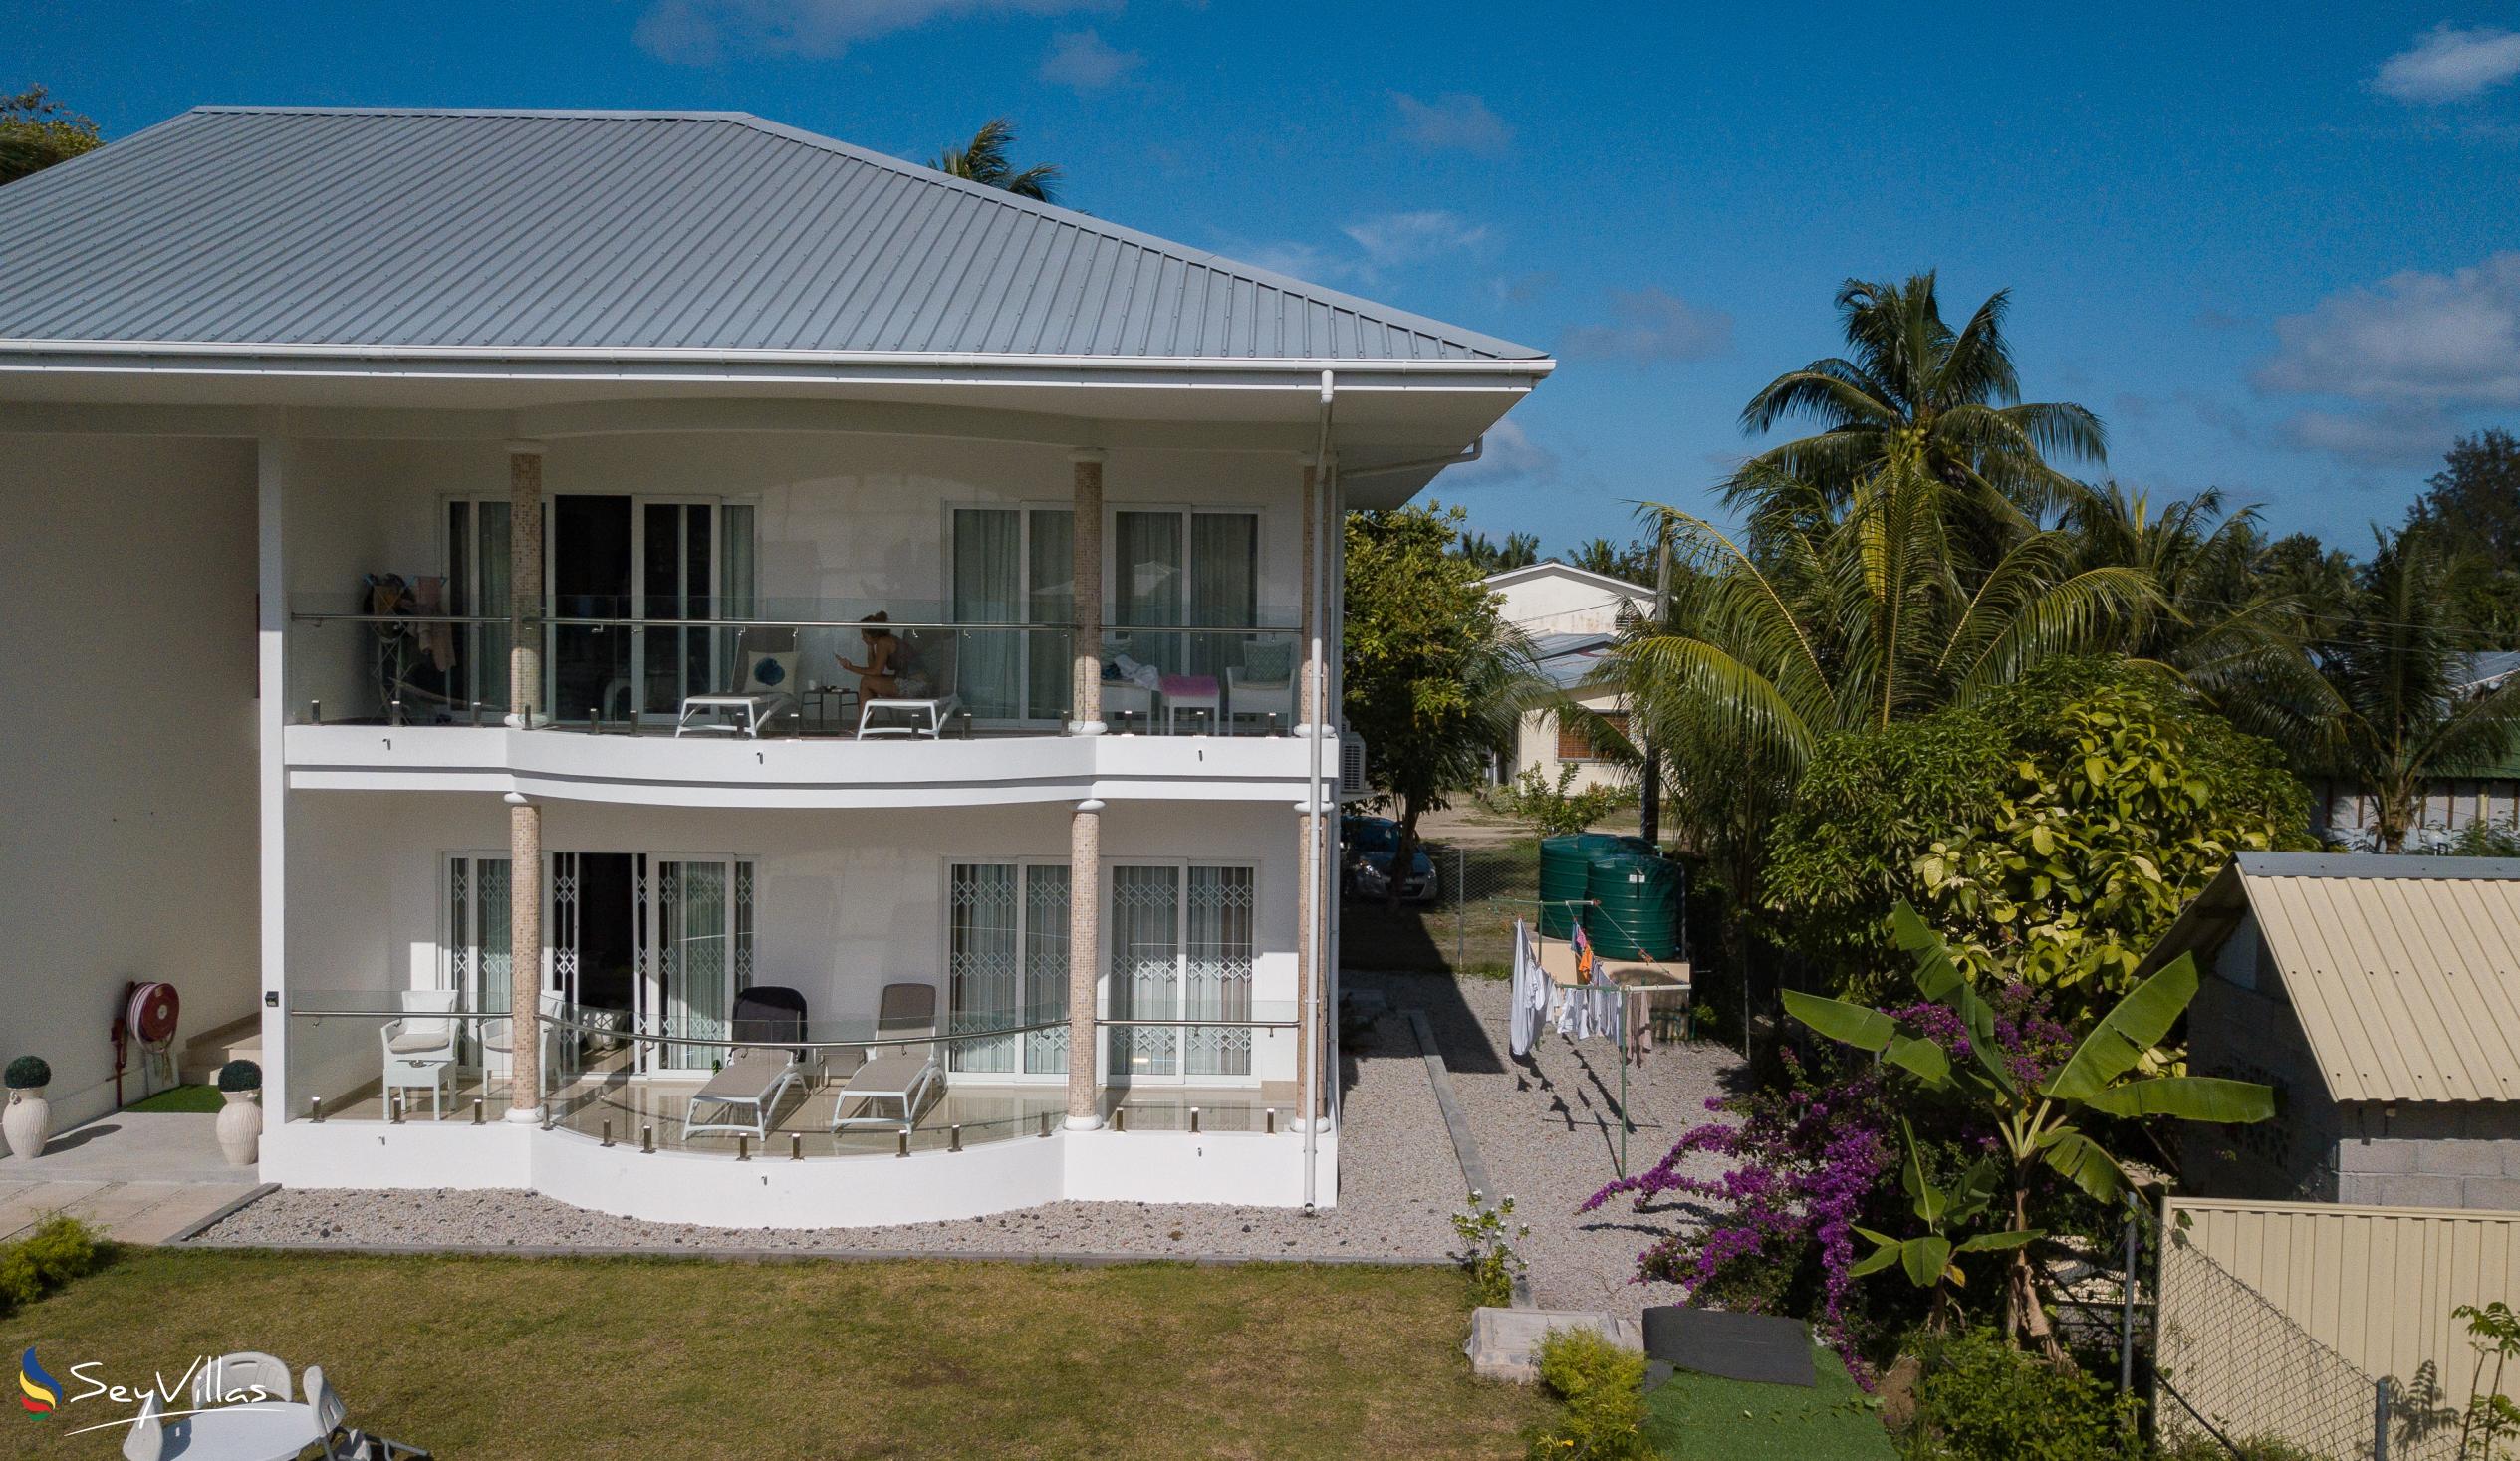 Foto 3: Tropic Villa Annex - Aussenbereich - Praslin (Seychellen)